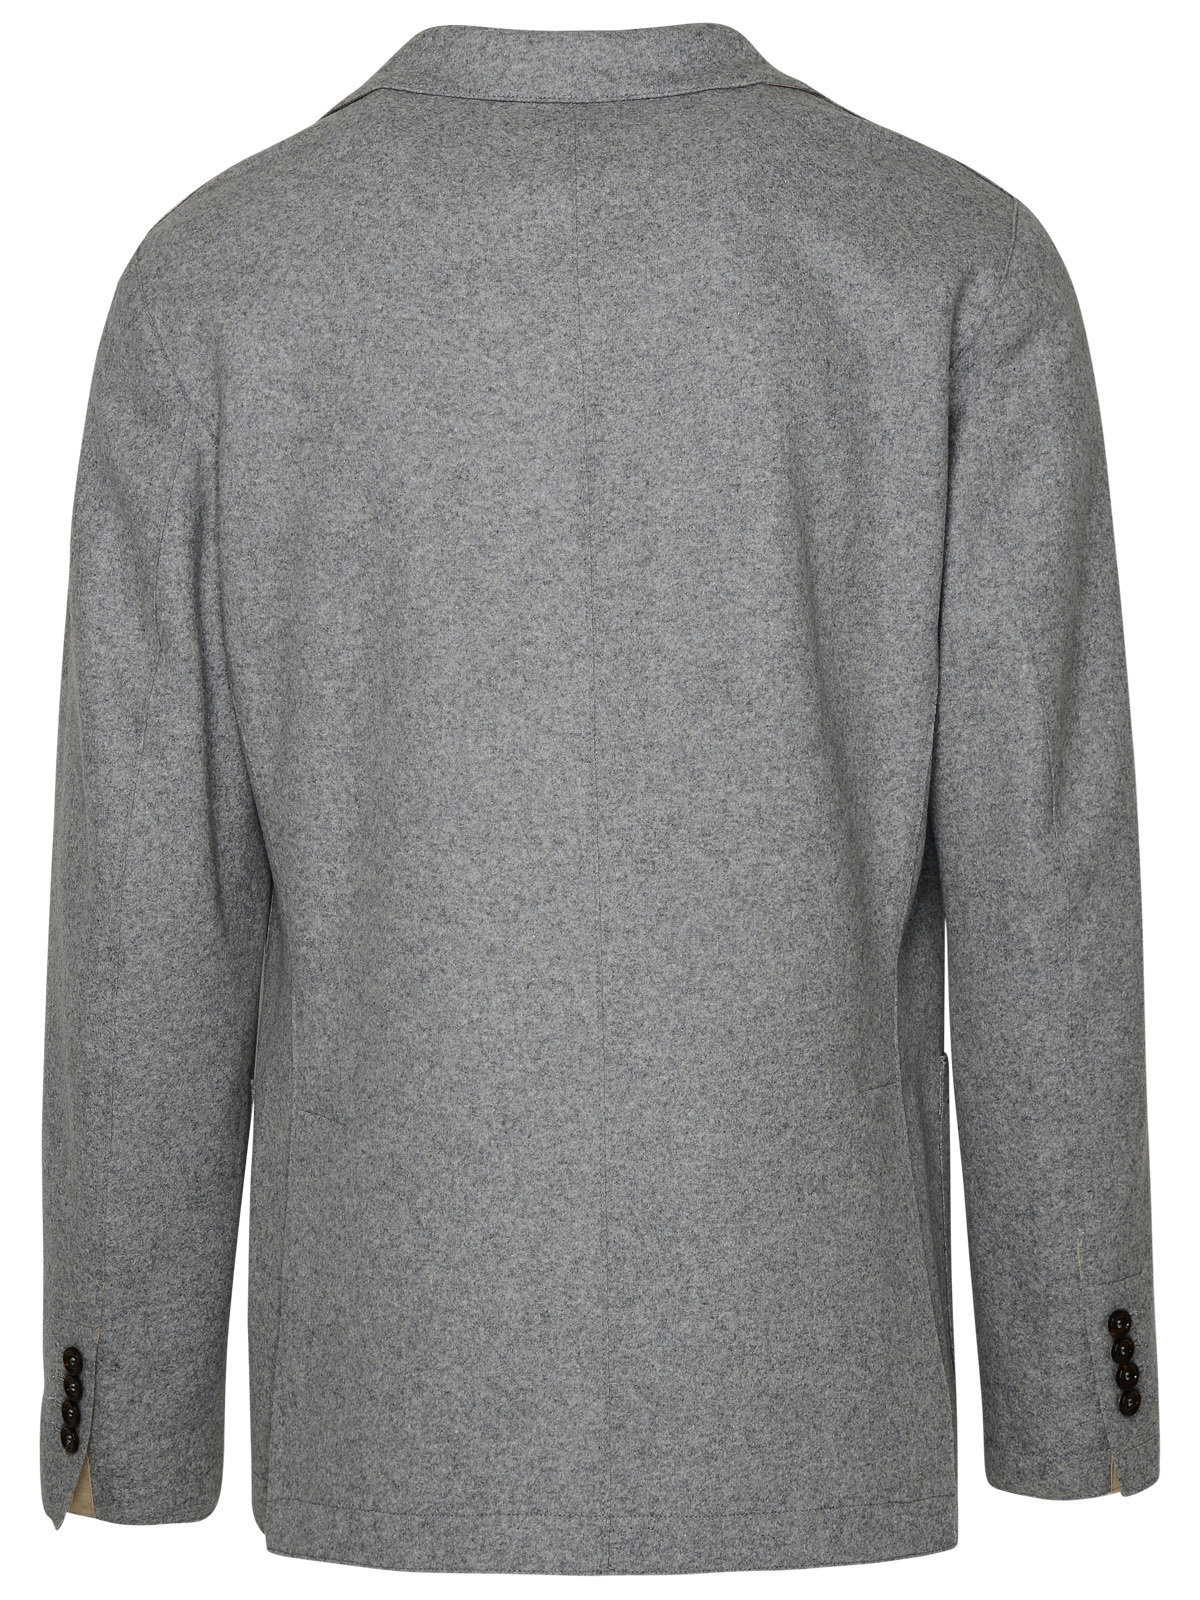 Eleventy Uomo Gray Wool Blazer Jacket - Walmart.com